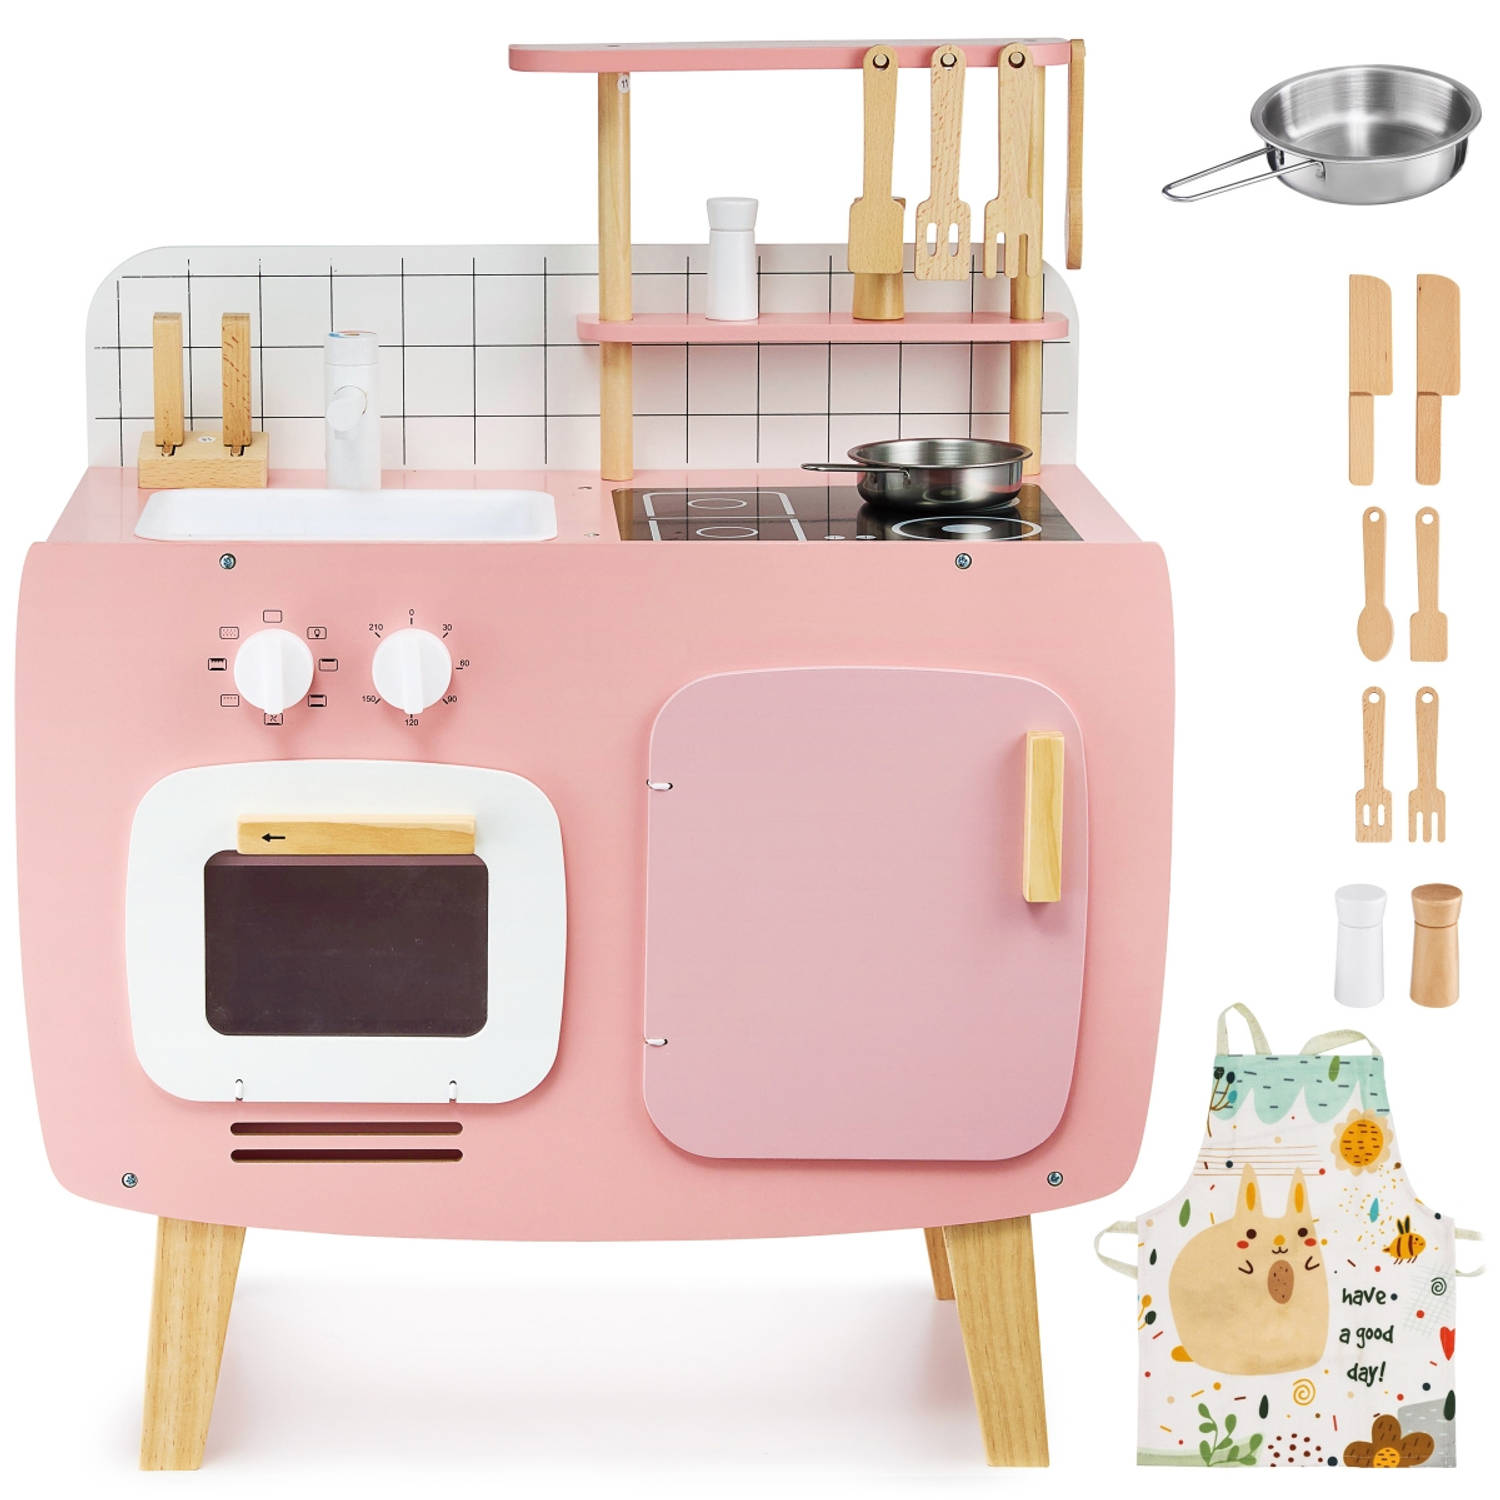 namens Trekken Aktentas Mamabrum Houten retro keuken met schort en accessoires - roze | Blokker